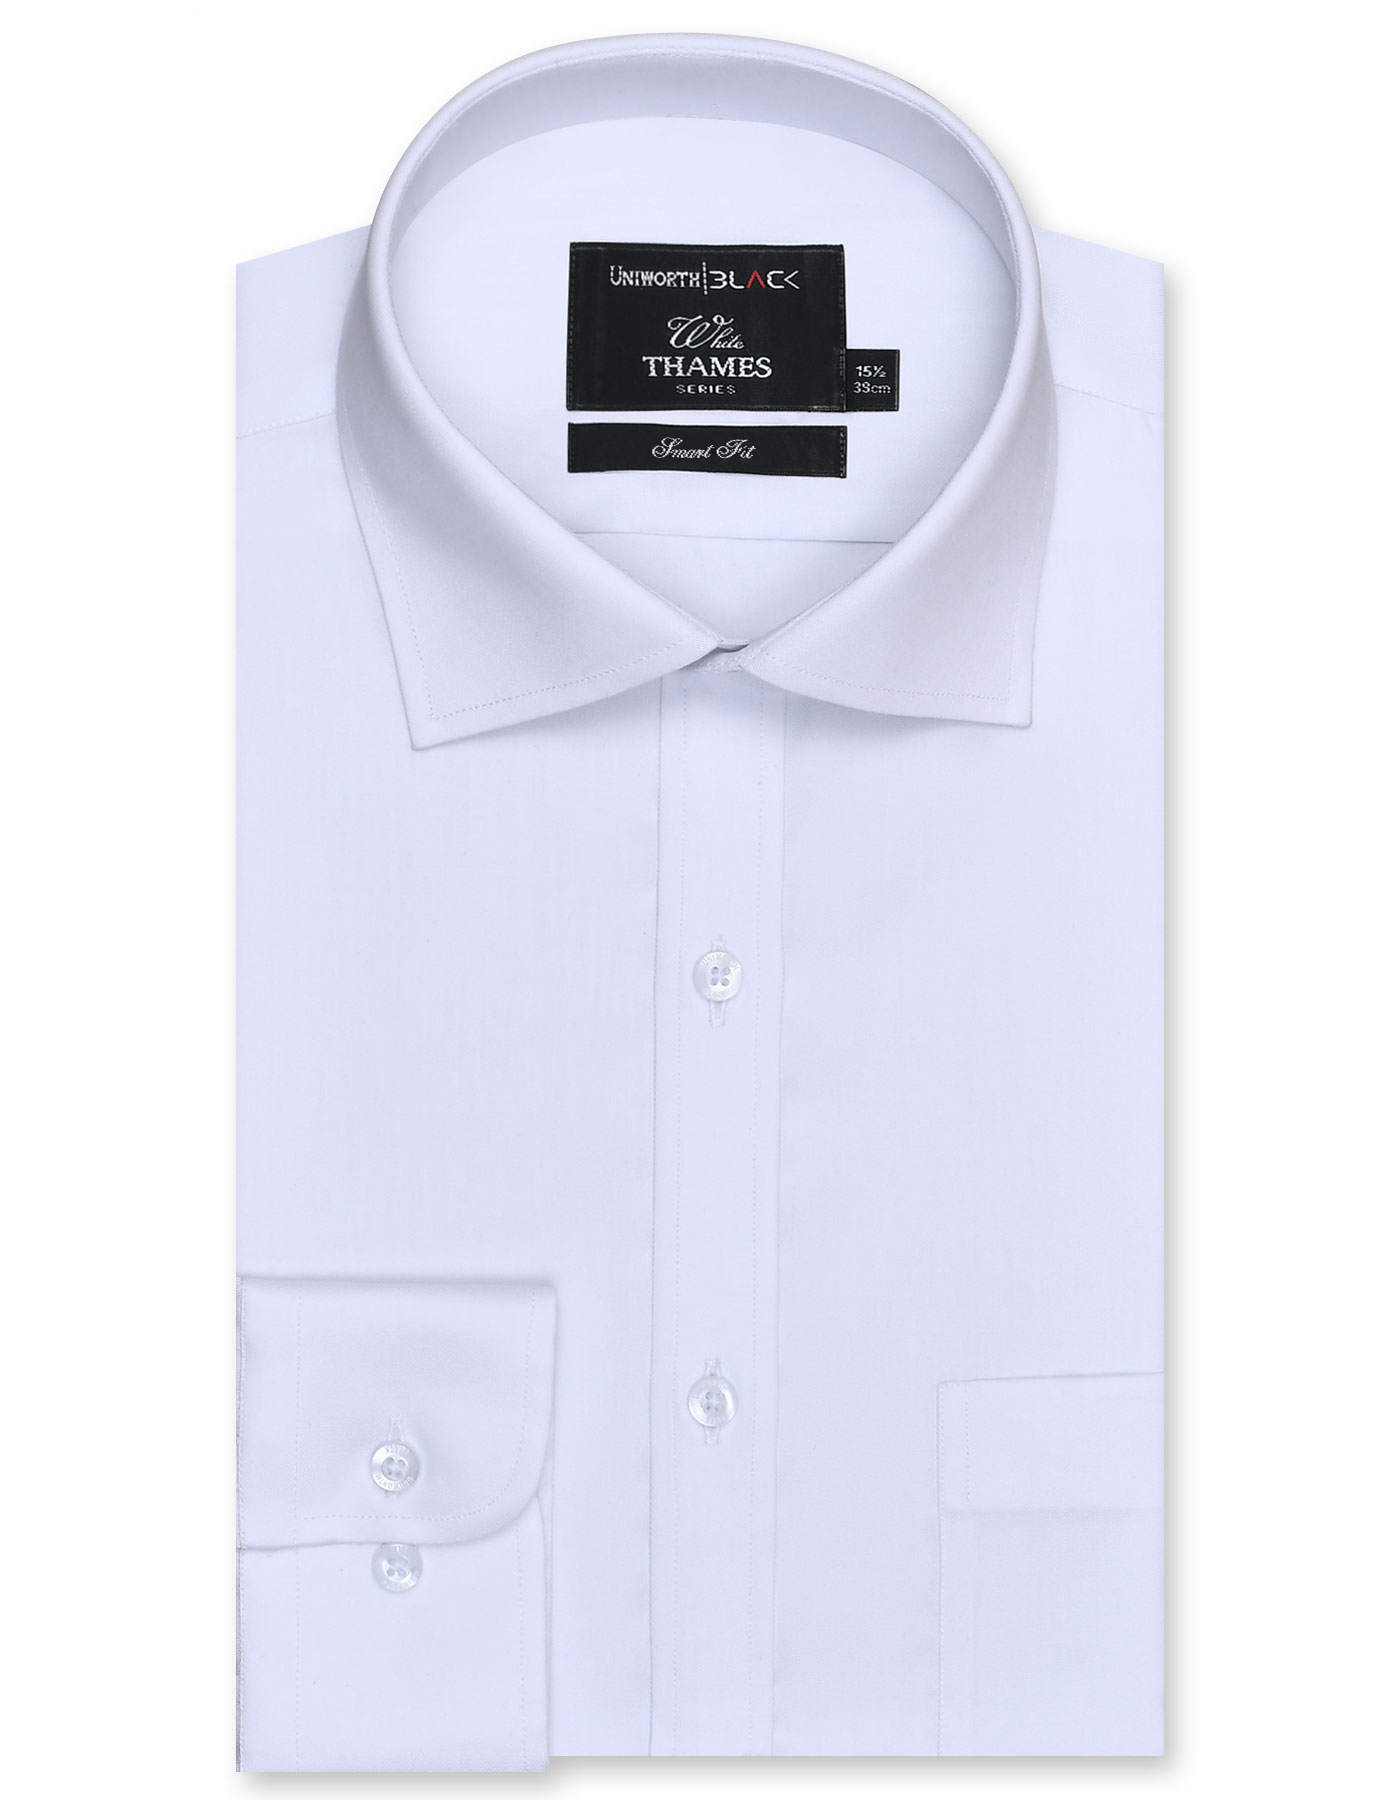 White Formal Shirt For men